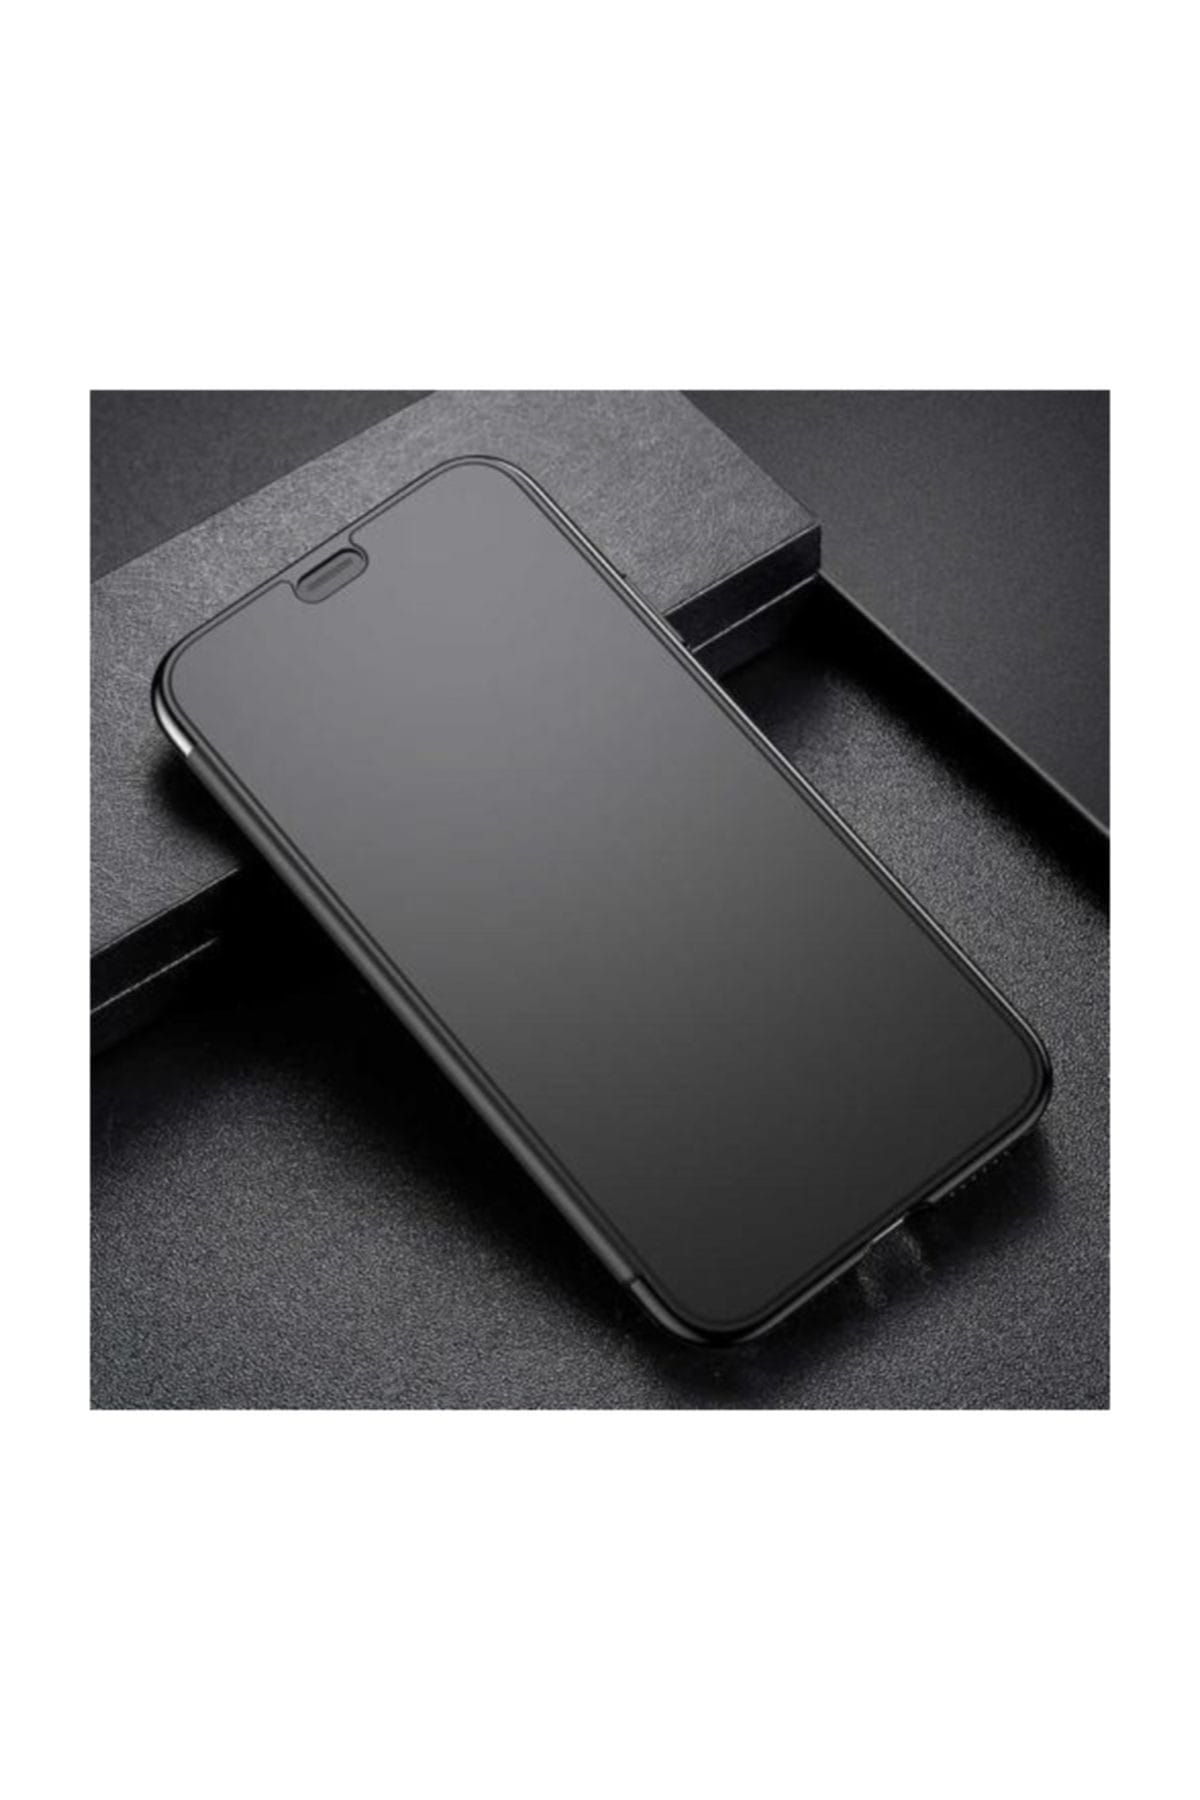 Baseus Touchable Serisi Apple iPhone XS 5.8 / iPhone X Şeffaf Kapaklı Kılıf Siyah